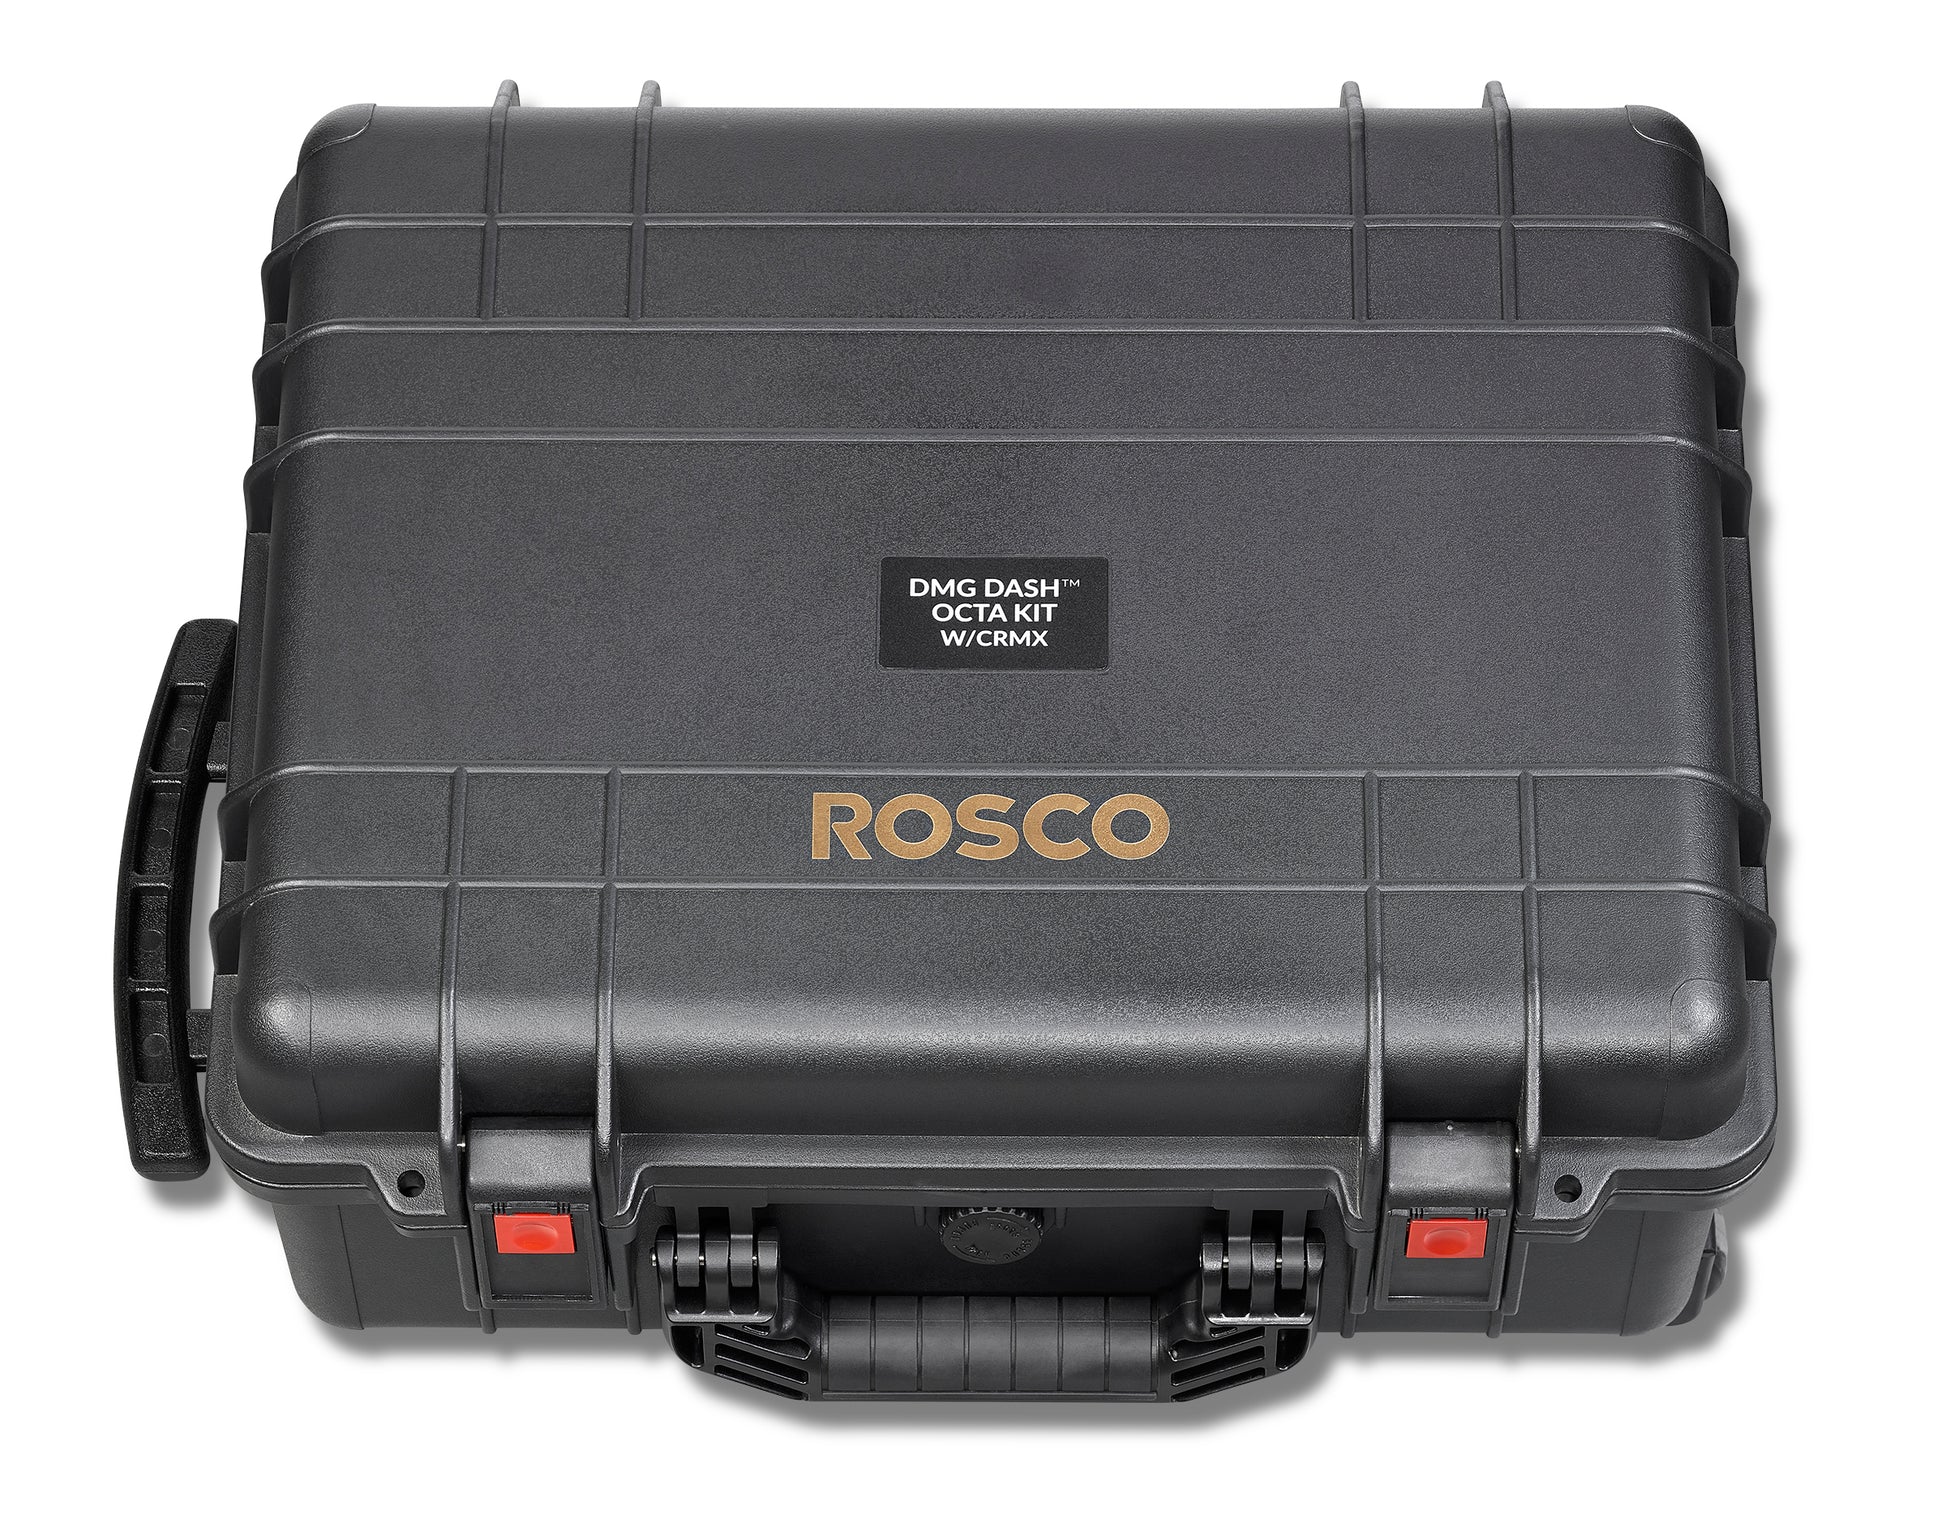 Rosco DMG DASH Octa Kit - HD Source